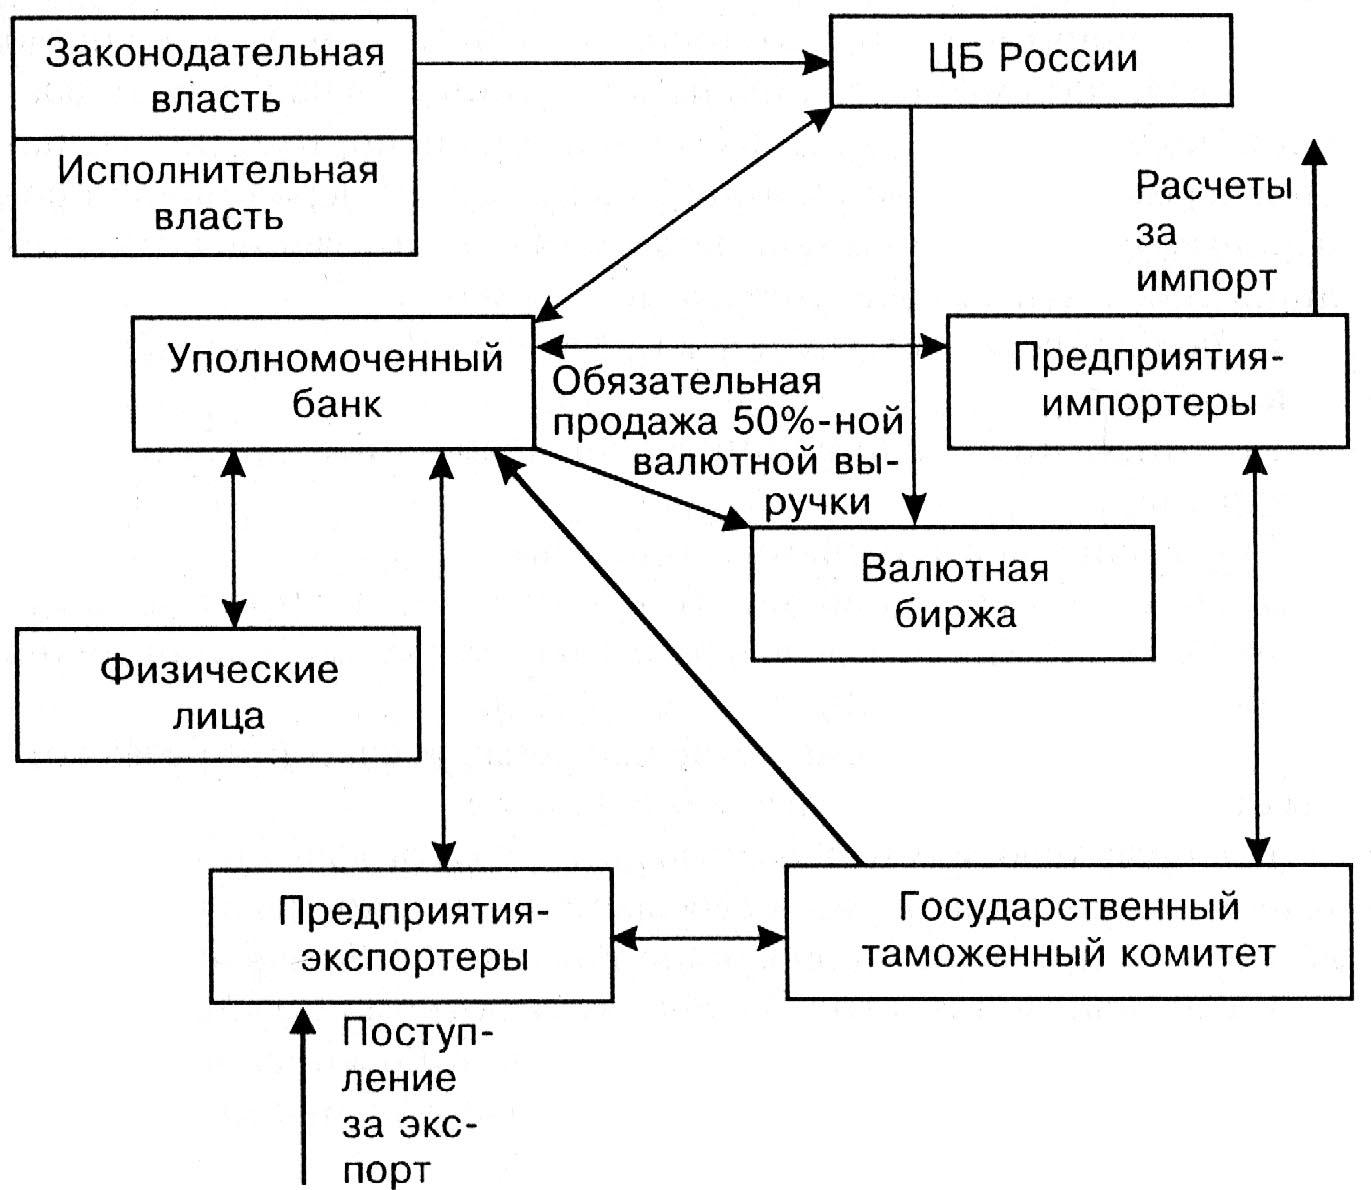 Валютное регулирование в валютной системе РФ